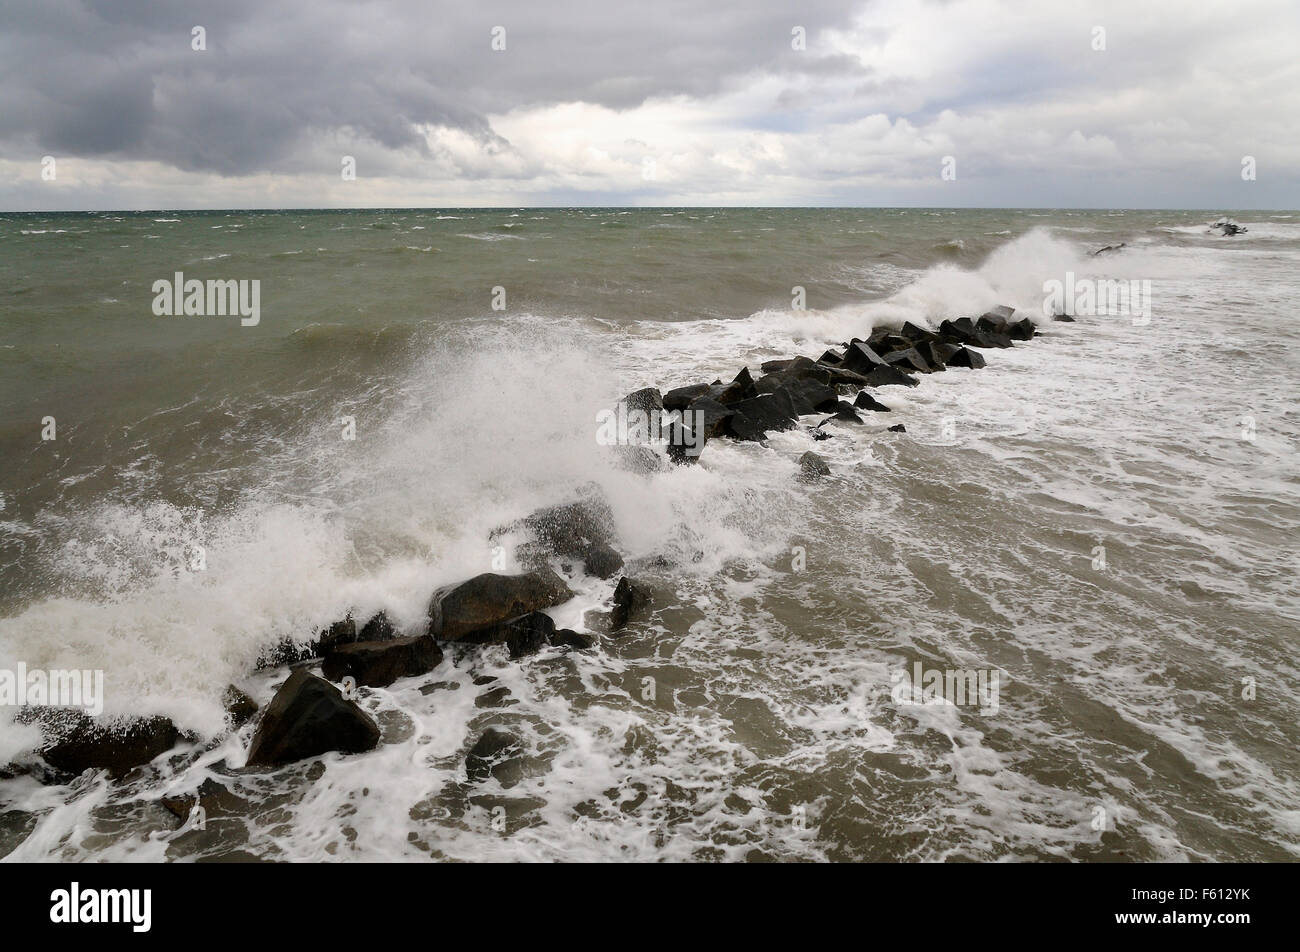 Breakwater on Wustrow beach, stormy seas, Mecklenburg-Western Pomerania, Germany Stock Photo